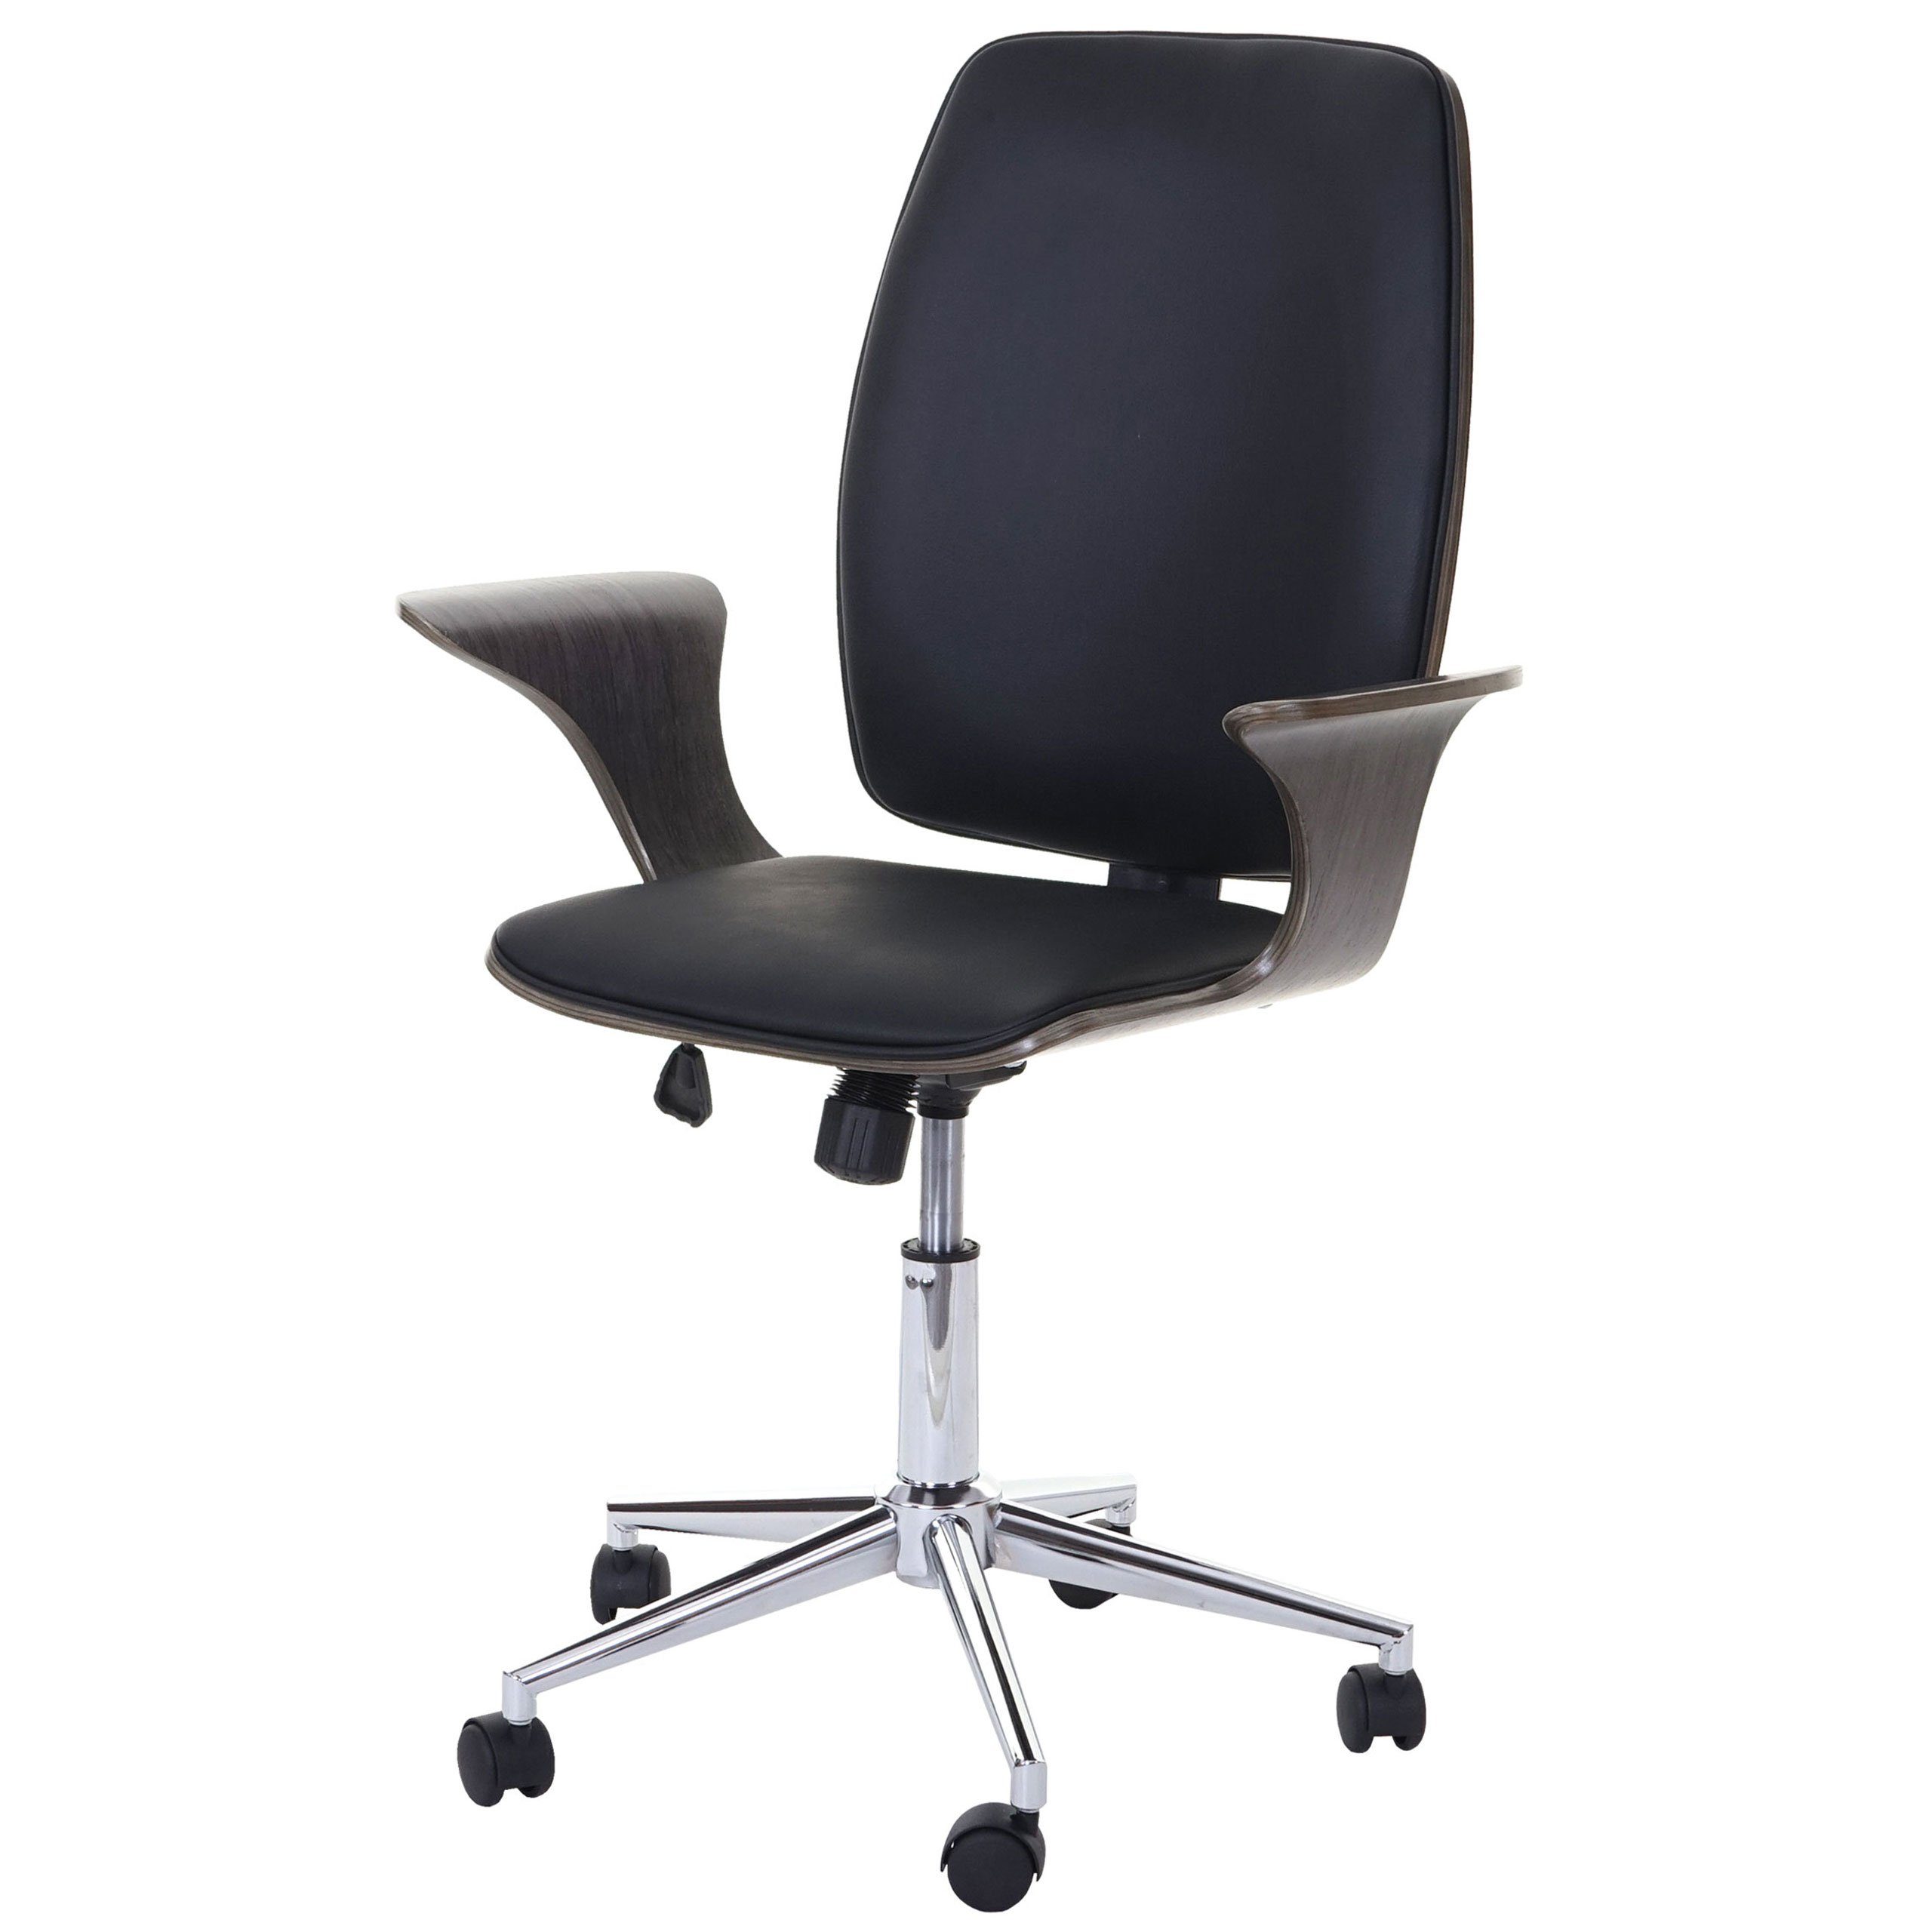 MCW Schreibtischstuhl MCW-C54, Wipptechnik, Härtegrad einstellbar, Sitzschale mit Armlehnen grau,schwarz